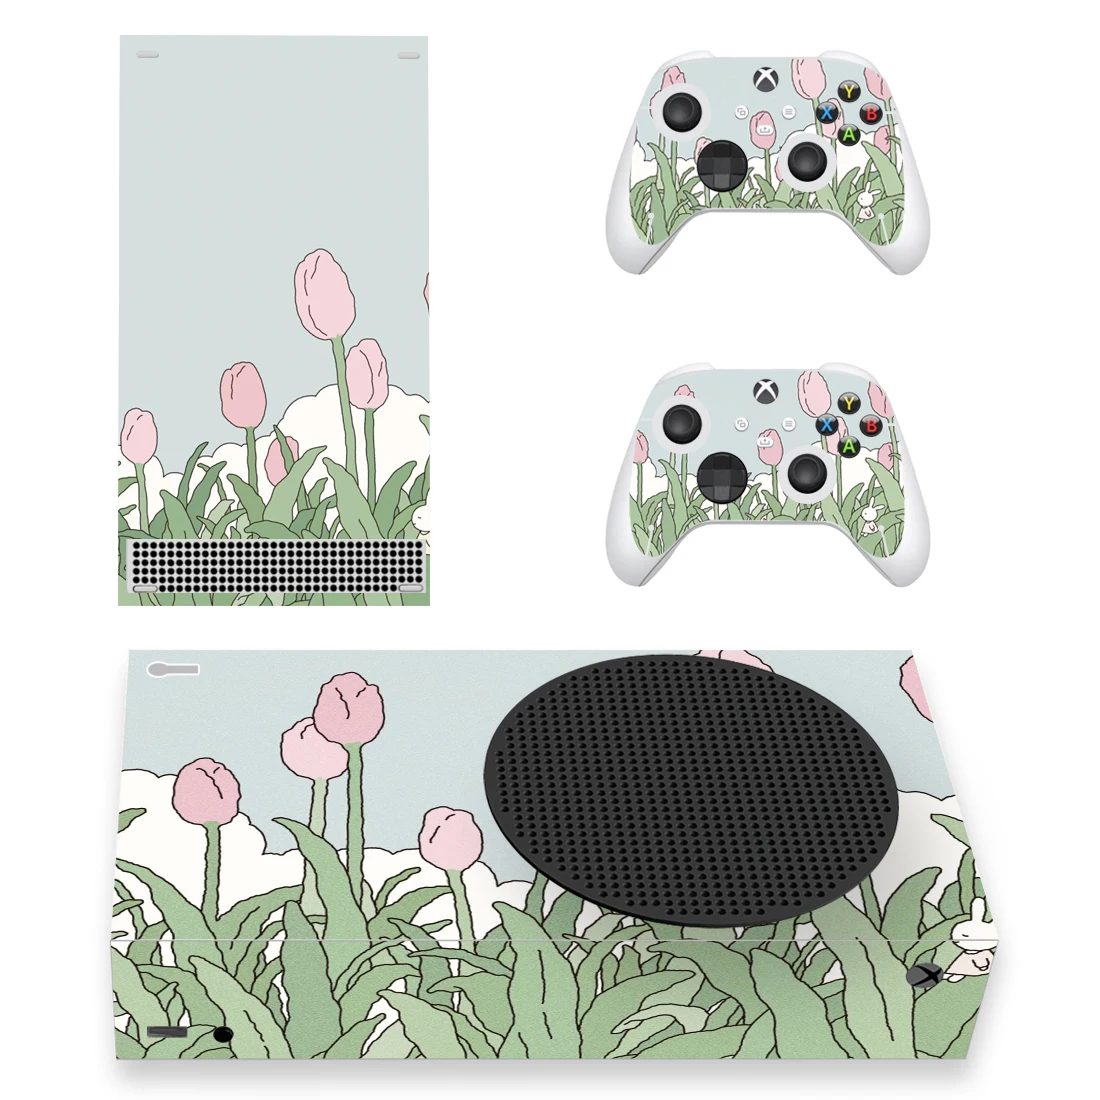 Наклейка с изображением цветка тюльпана, наклейка-наклейка для консоли Xbox серии S и контроллеров, виниловая наклейка с изображением цветка Xbox серии Slim.